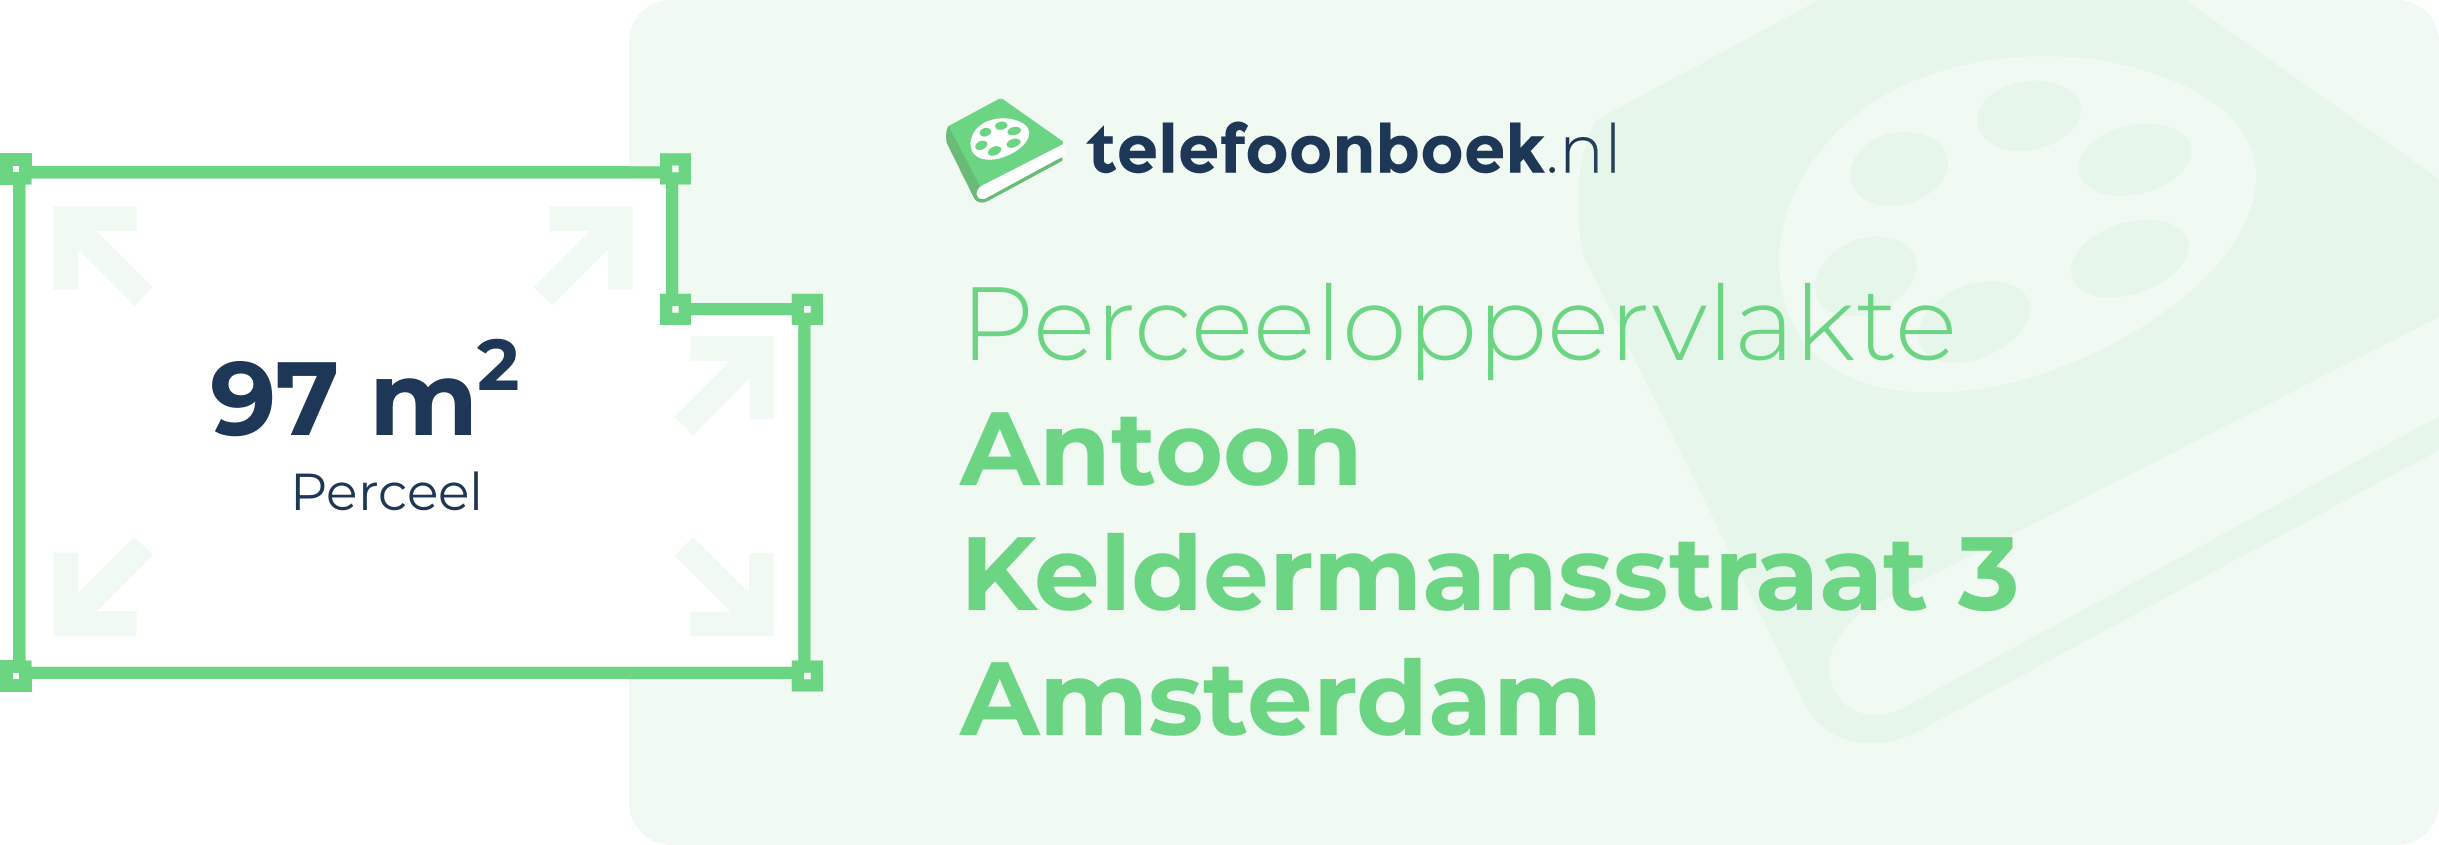 Perceeloppervlakte Antoon Keldermansstraat 3 Amsterdam